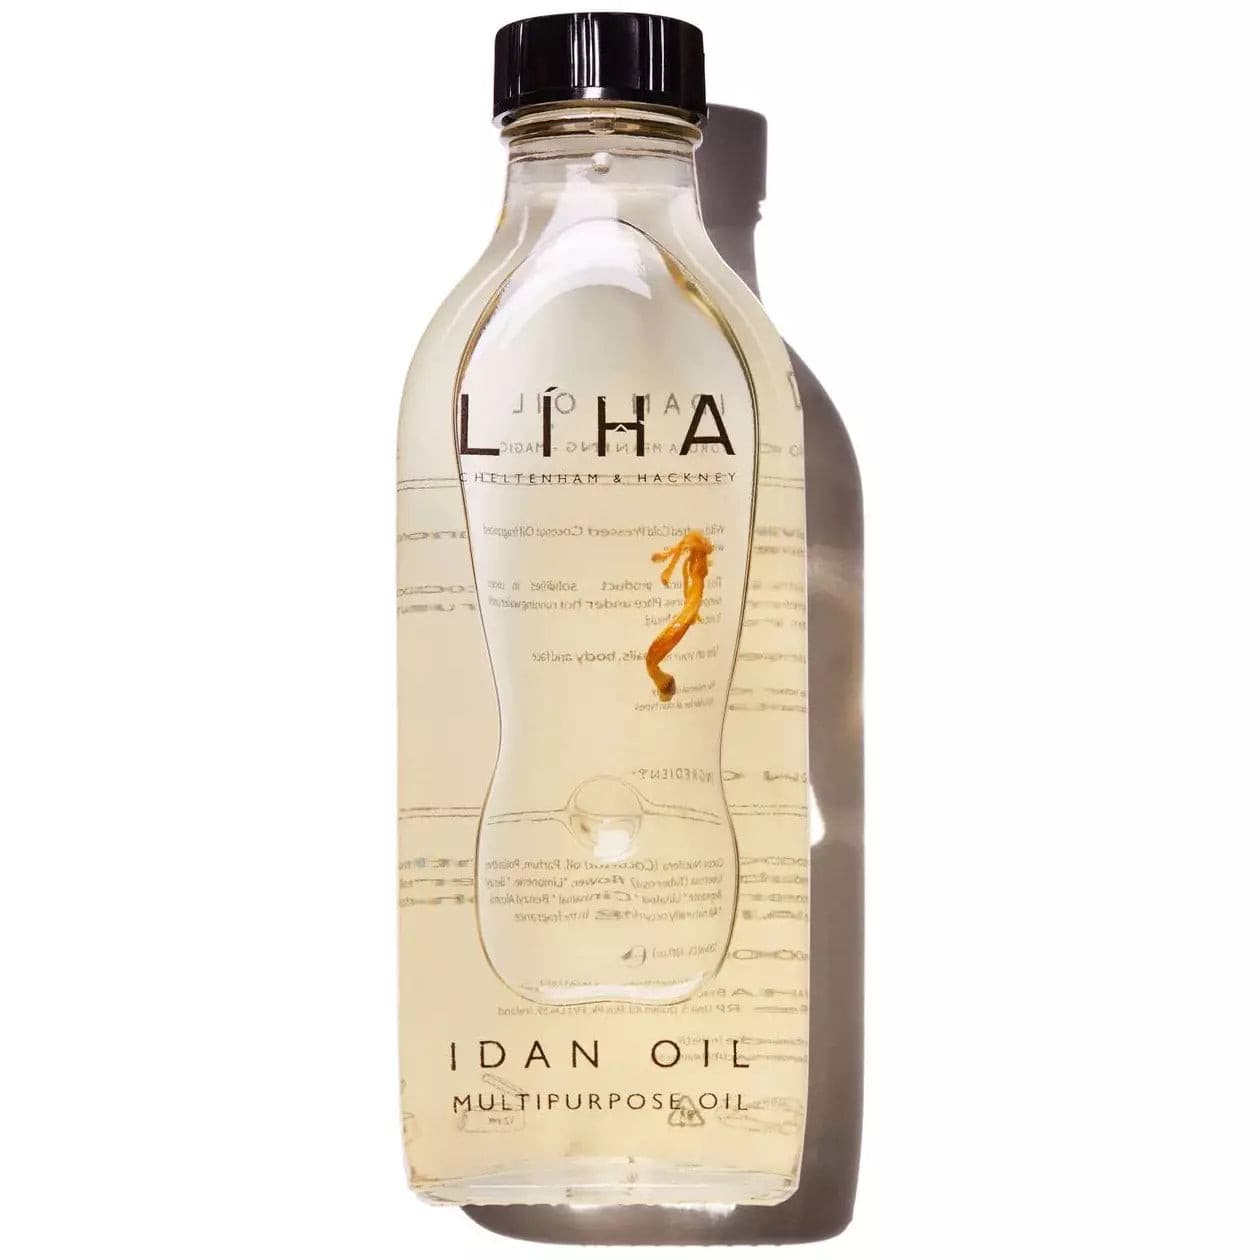 Idan oil (100ml) - Guanako.Beauty